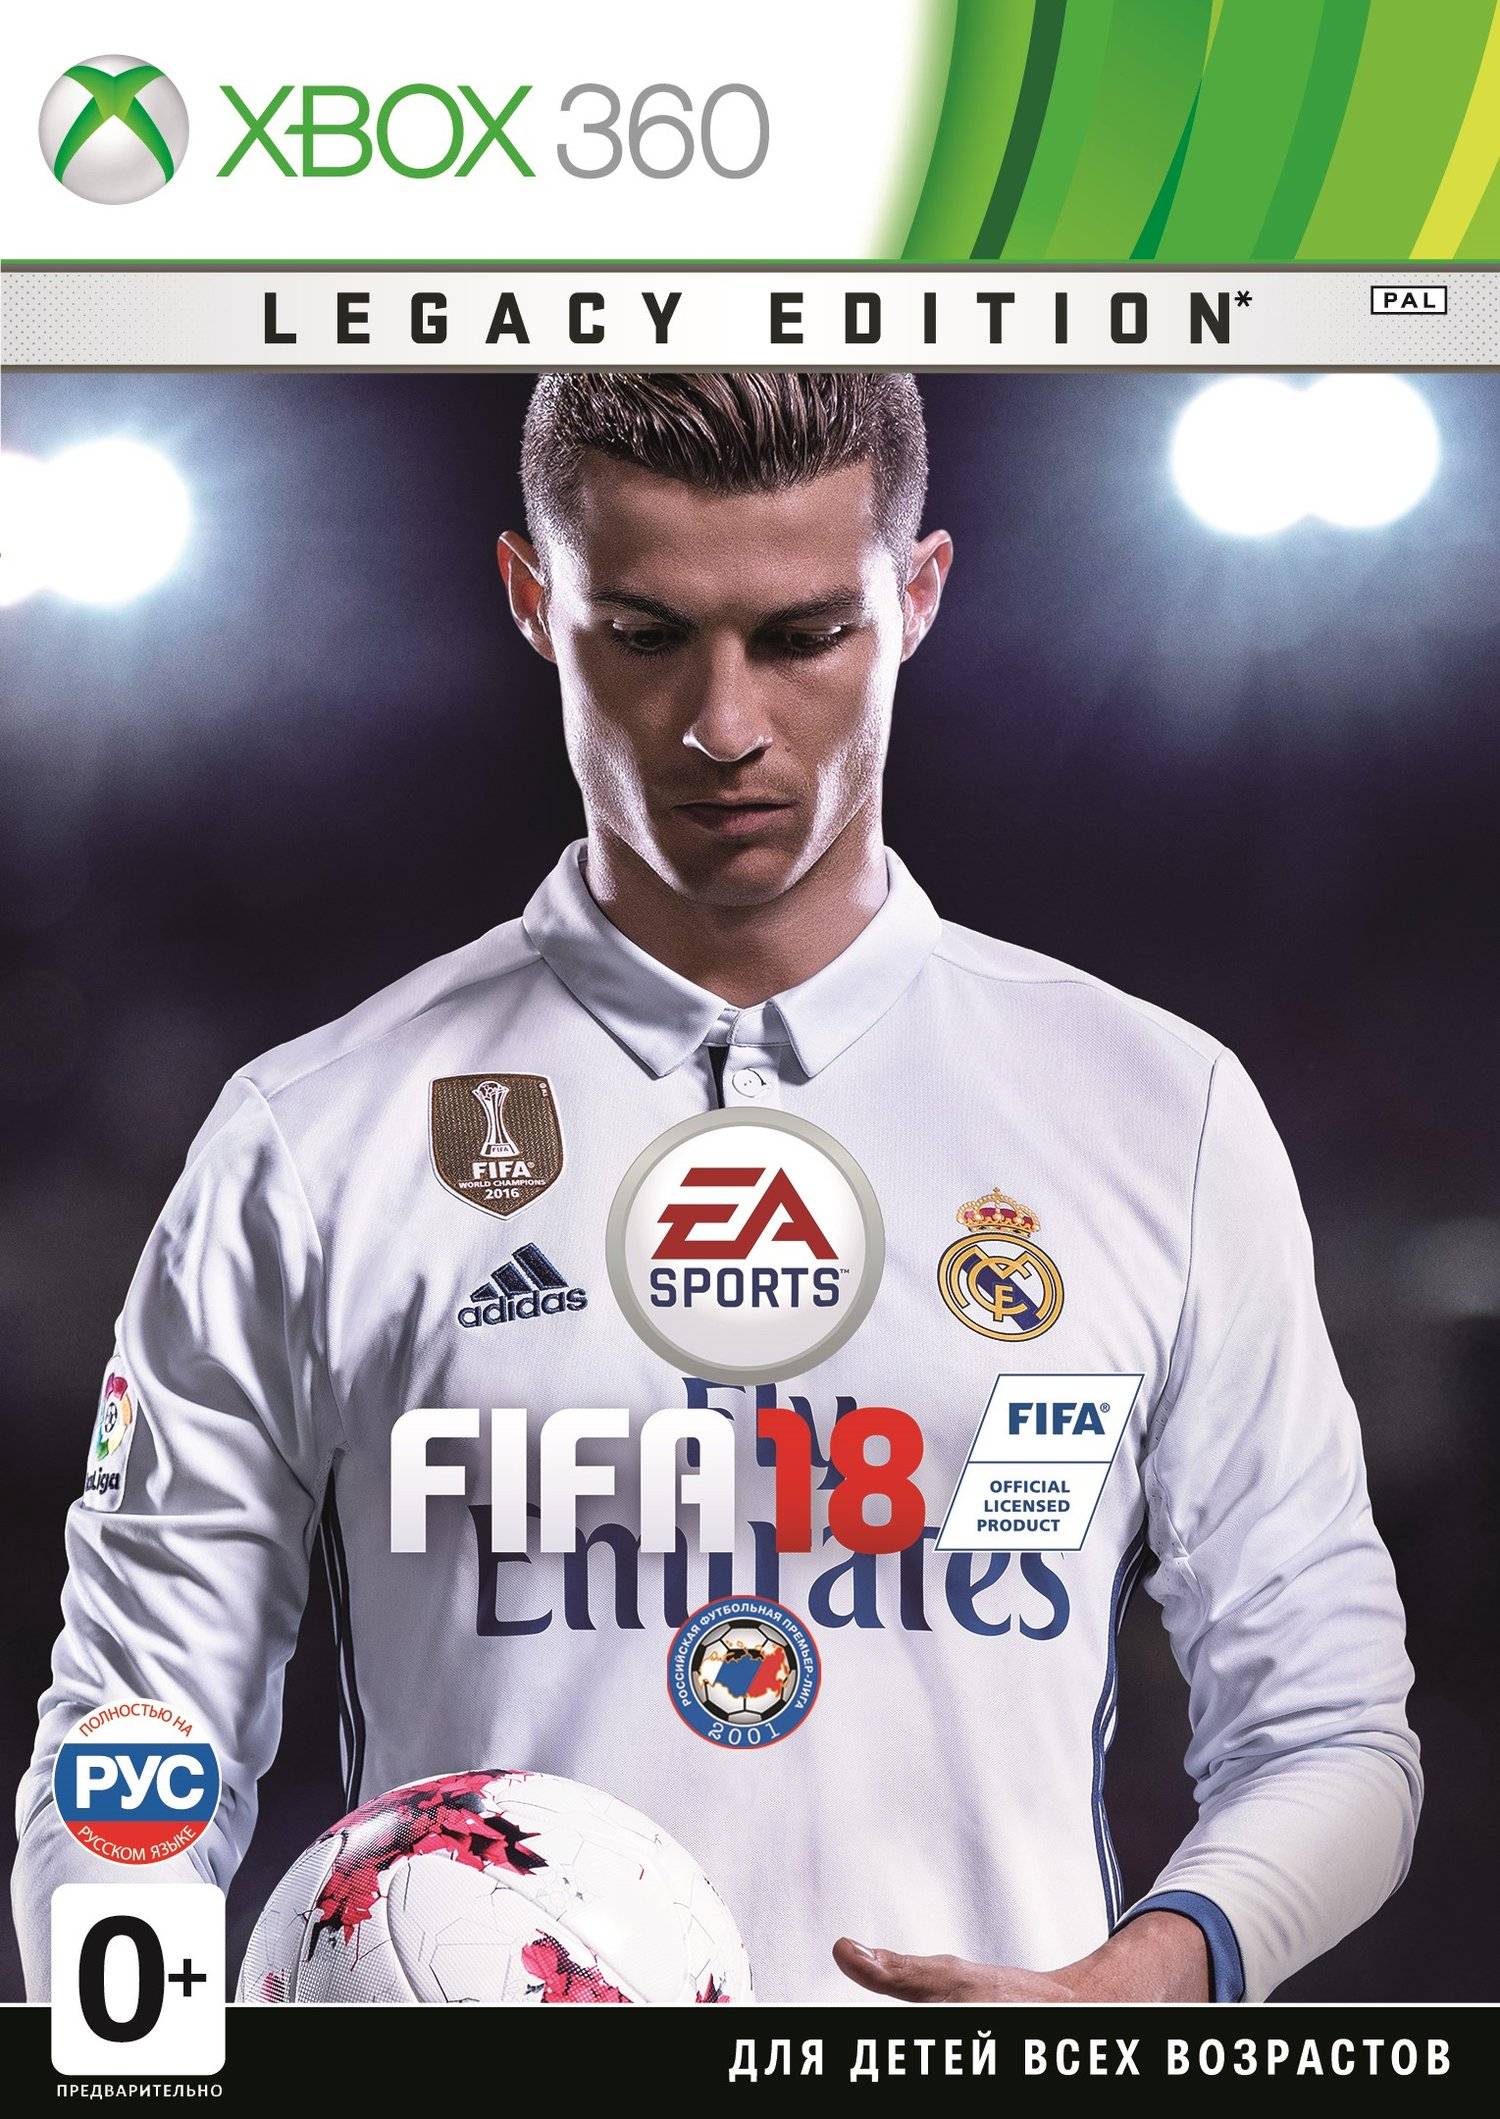 Fifa legacy. FIFA 18 [ps4]. Диск ФИФА 18 на ПС 3. FIFA 18 ps4 диск. FIFA 18 ps4 диск русская версия.